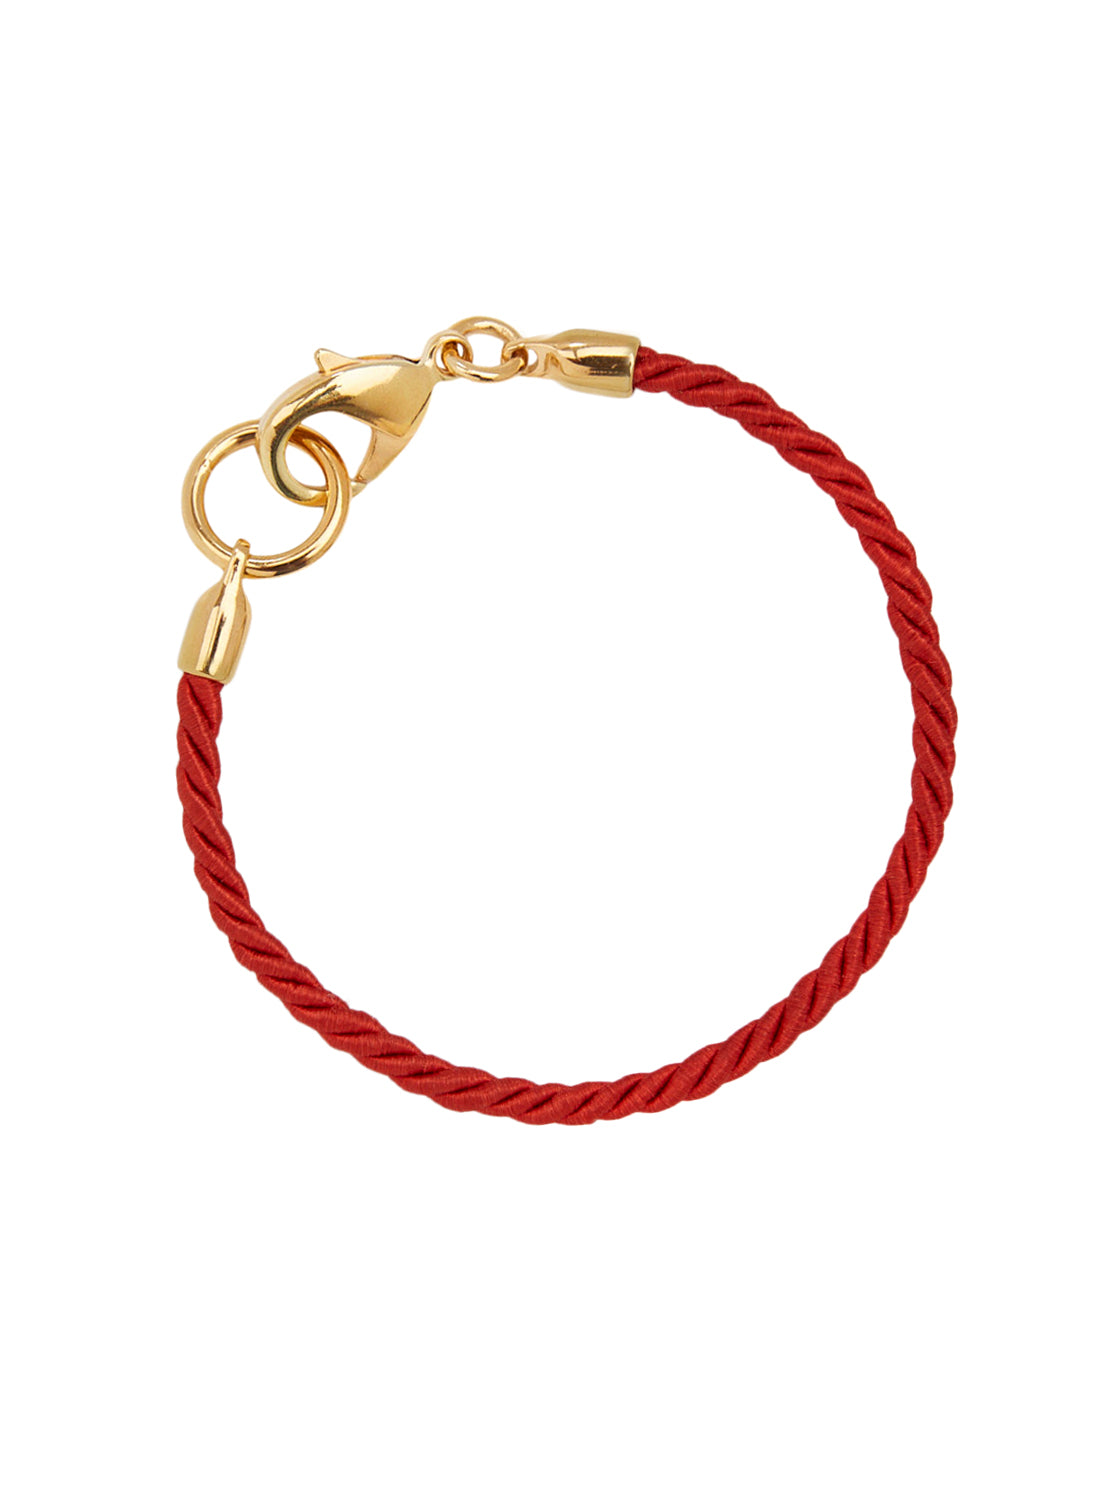 TS Friendship Bracelet in Crimson